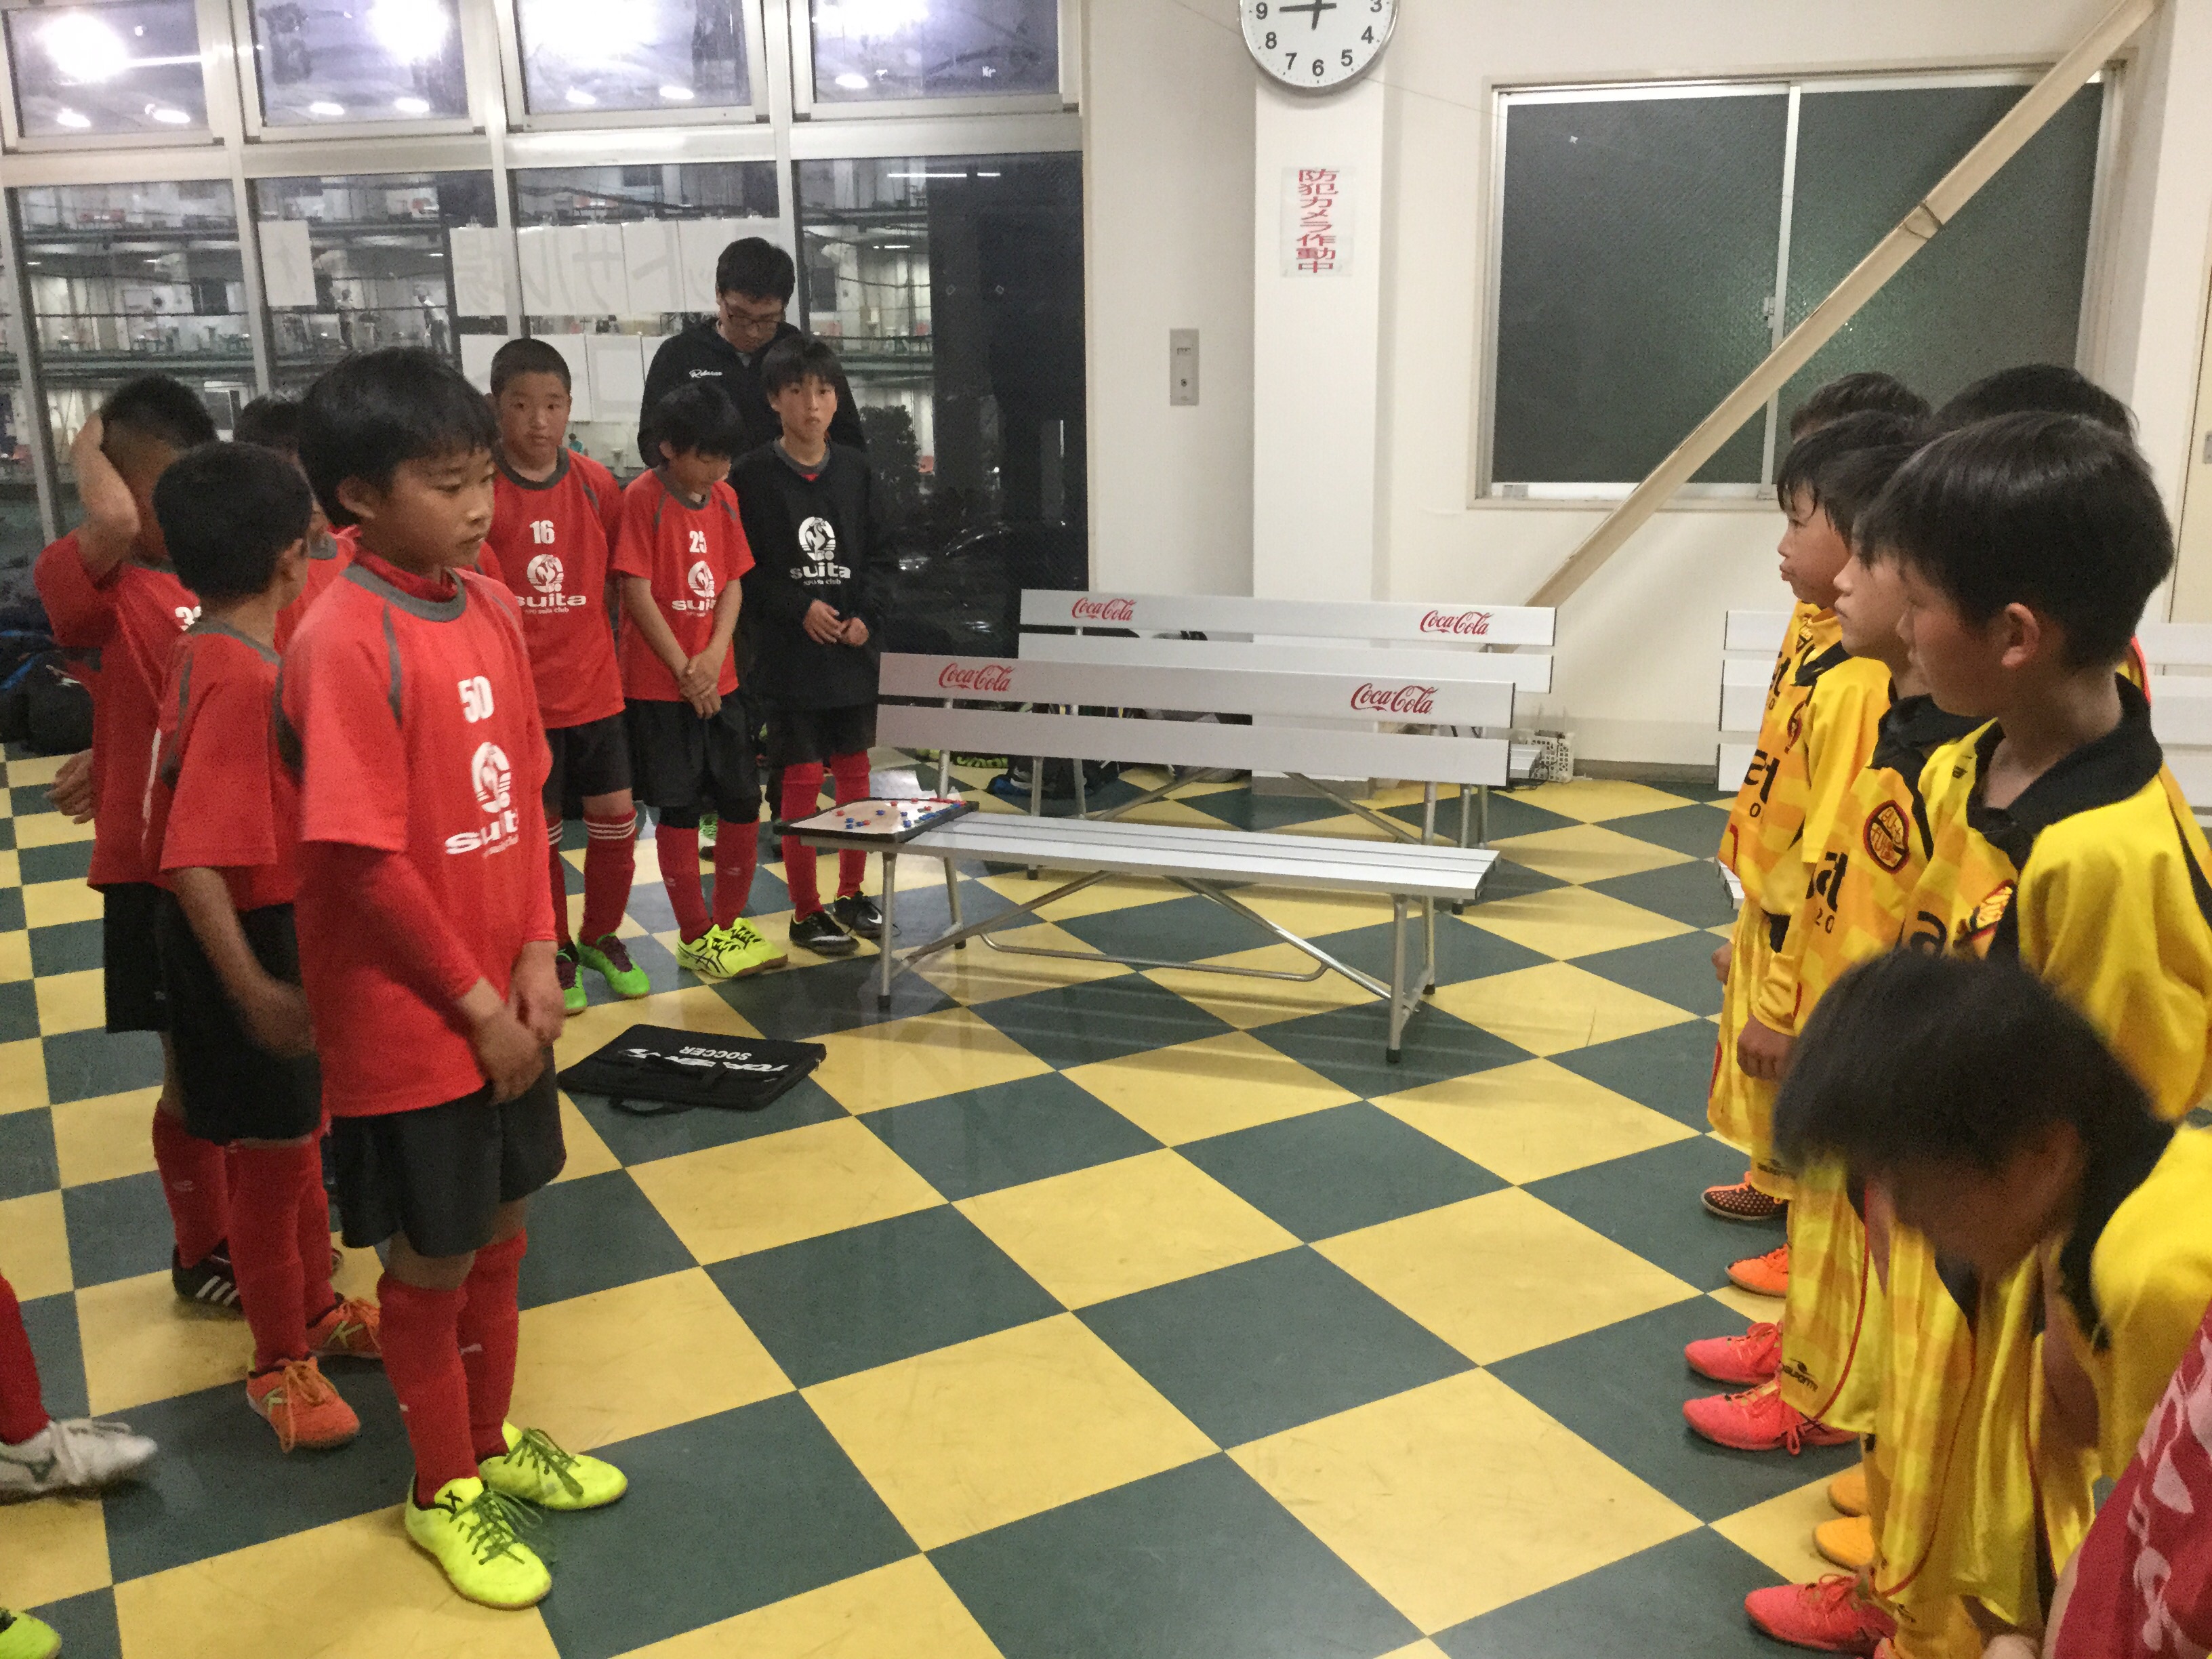 名門吹田 一般社団法人 Gatt Futsal School ガットフットサルスクール